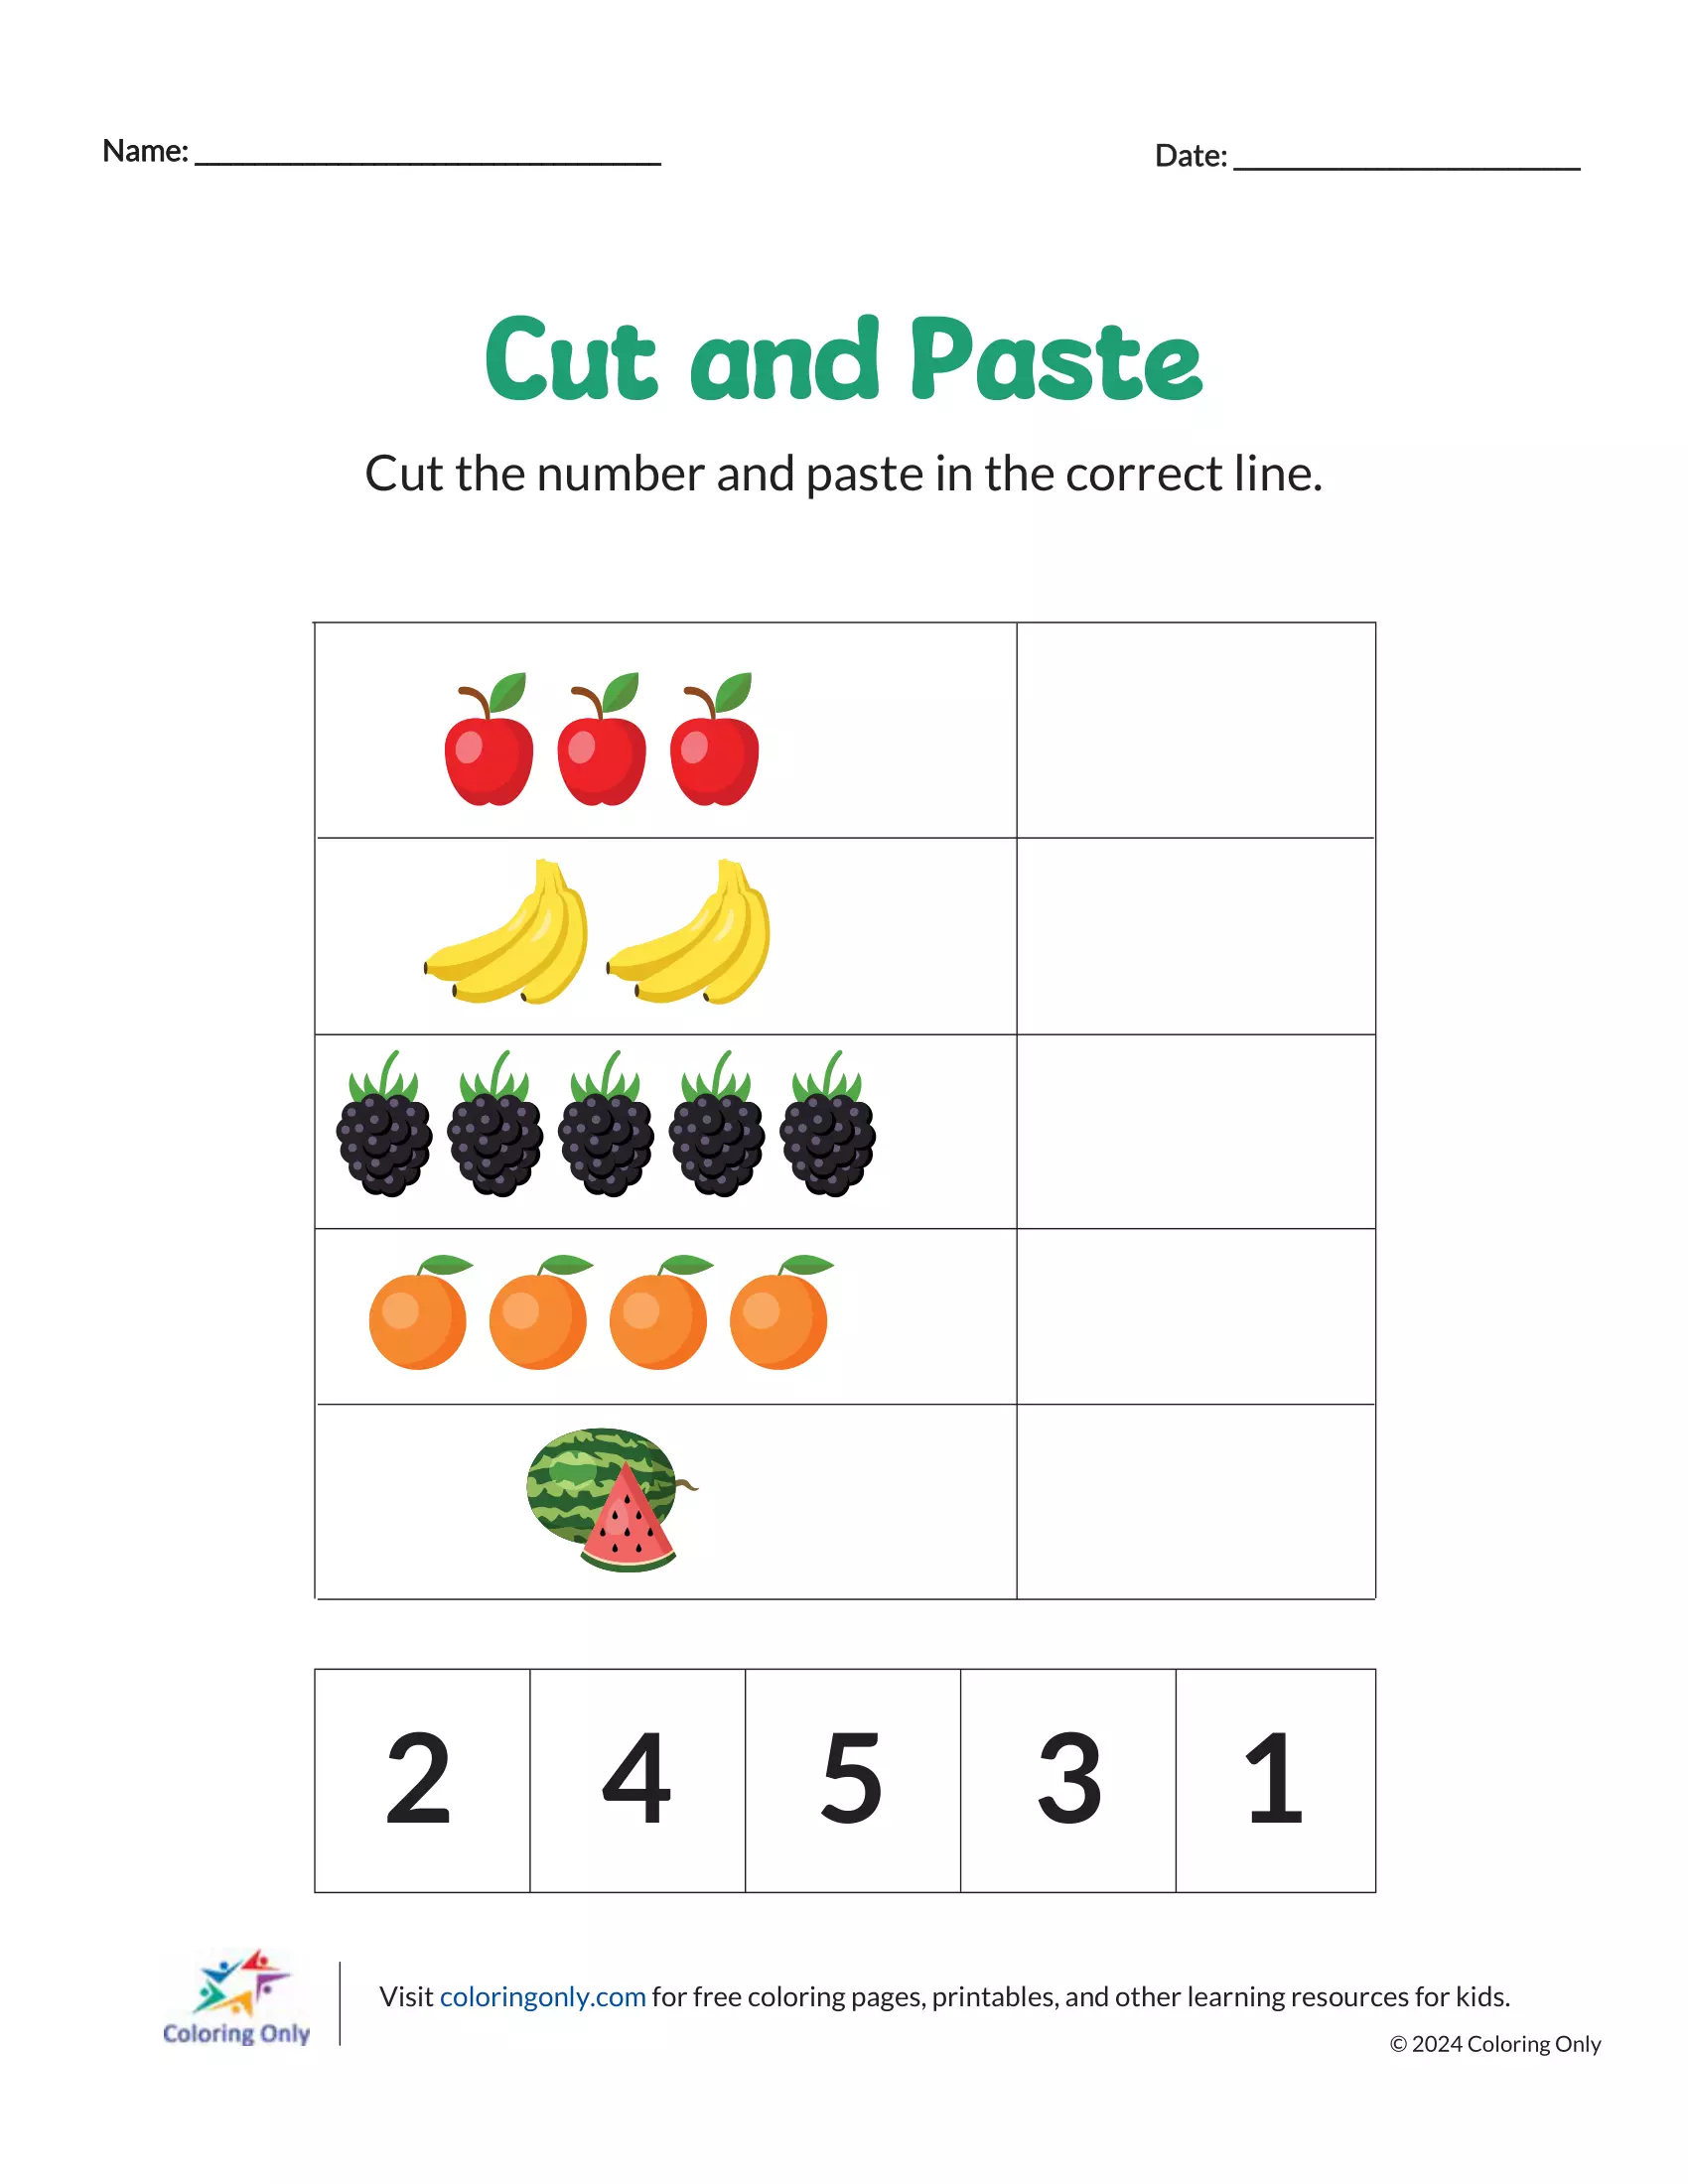 Cut and Paste Free Printable Worksheet